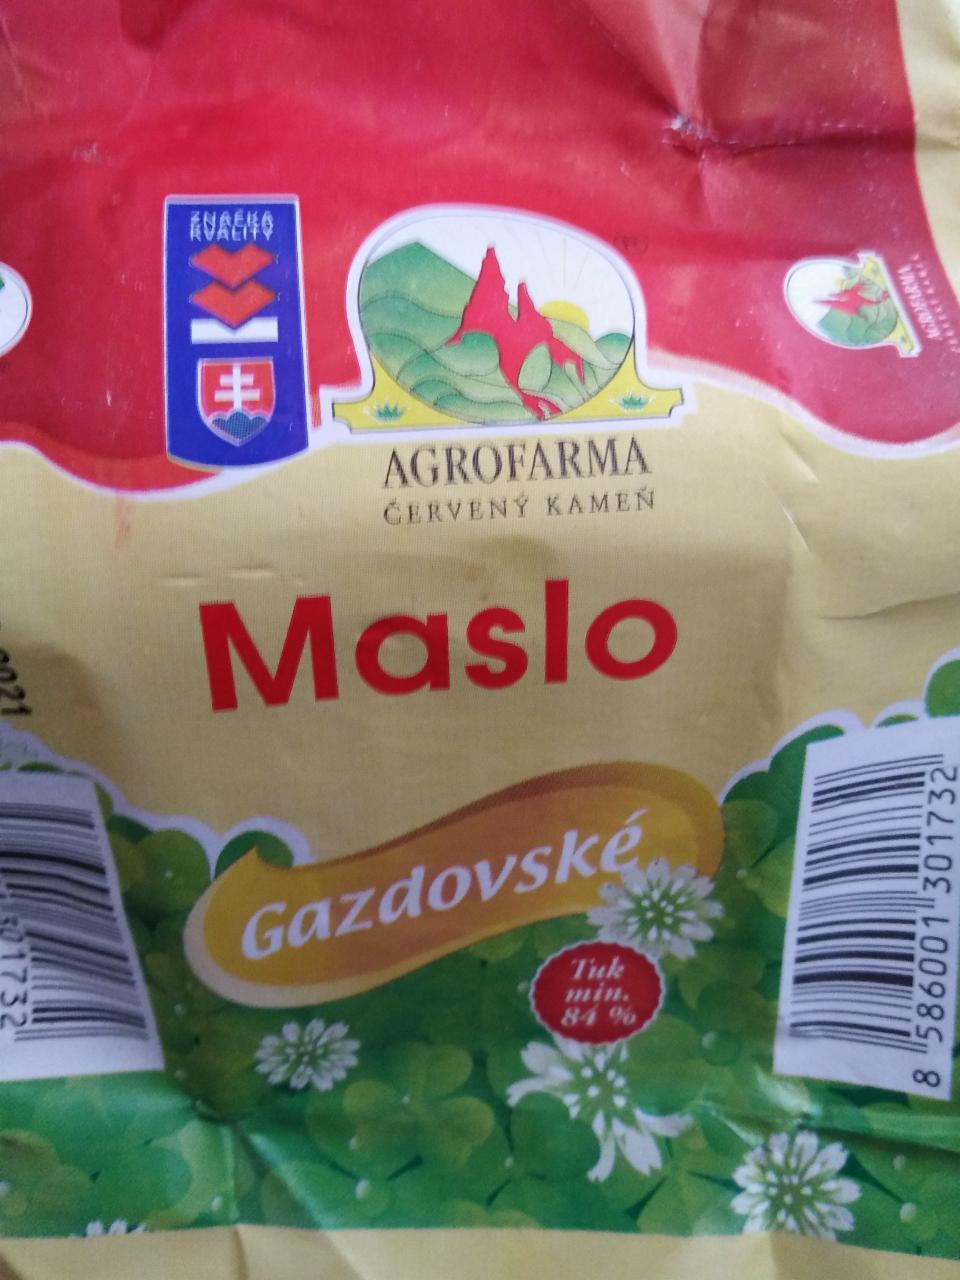 Fotografie - Gazdovské maslo AgroFarma